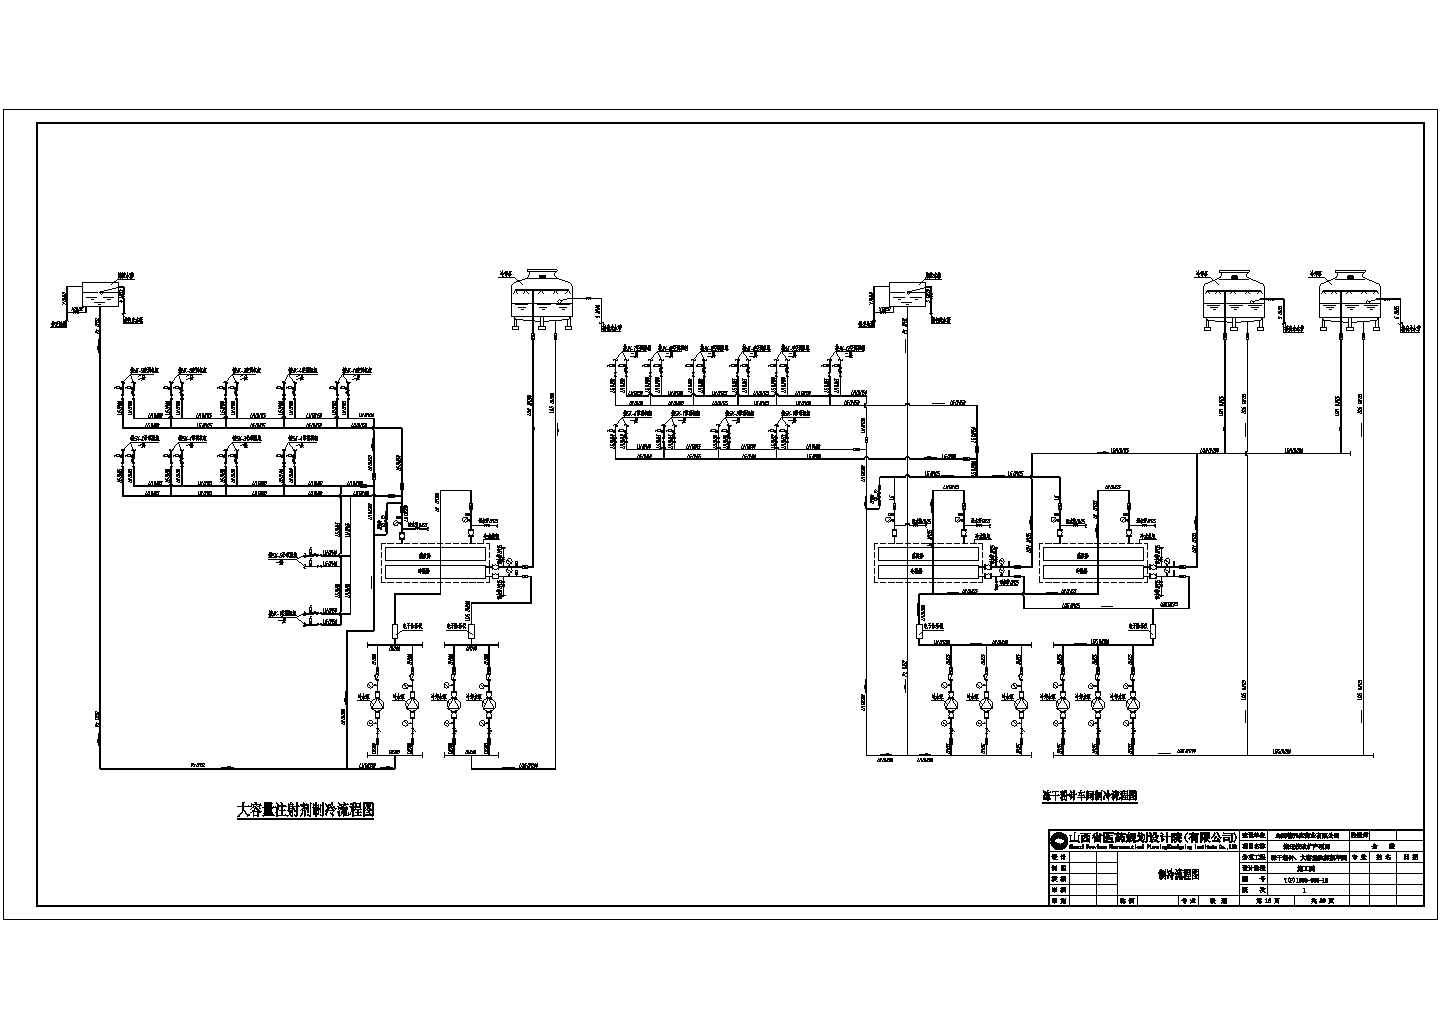 丙类厂房通风即防排烟系统全套设计CAD图纸